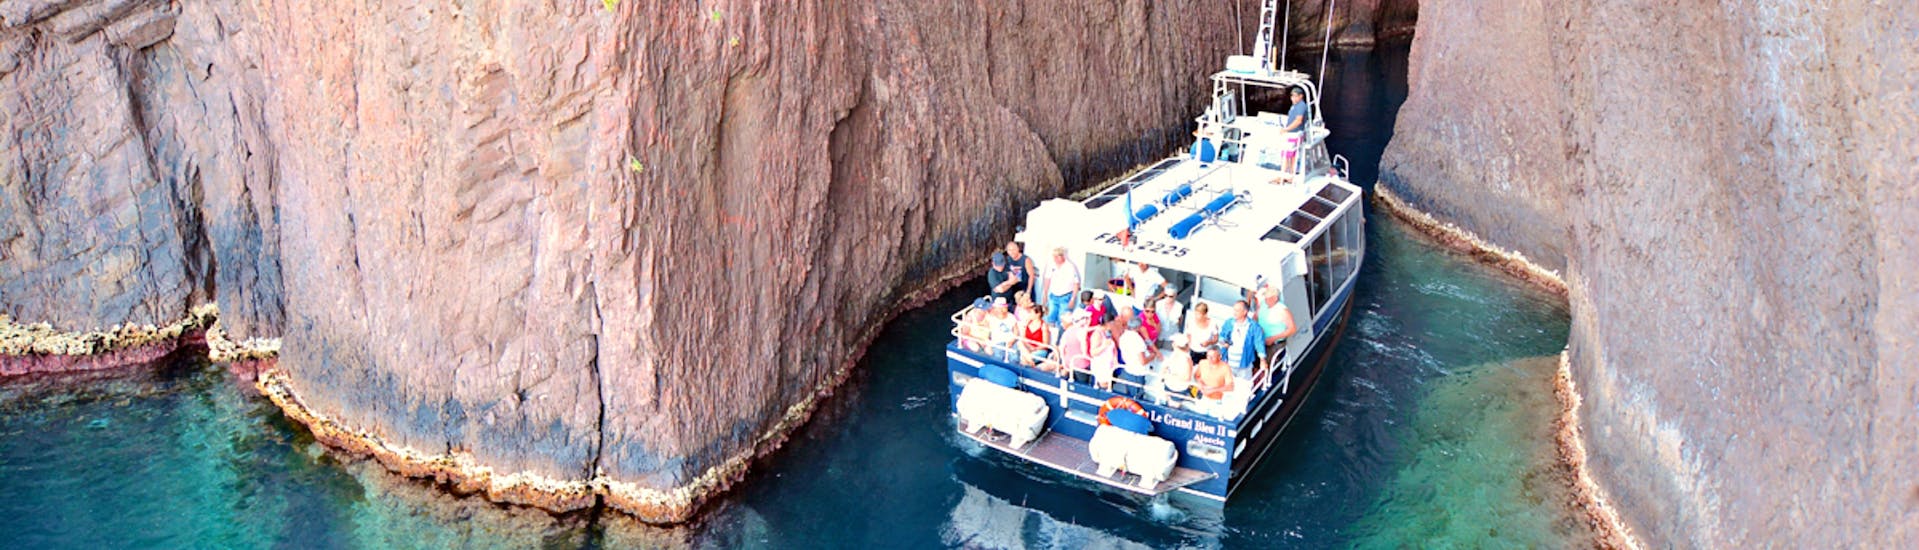 Des personnes font une Balade en bateau vers les calanques de Piana depuis Cargèse avec Croisière Grand Bleu.